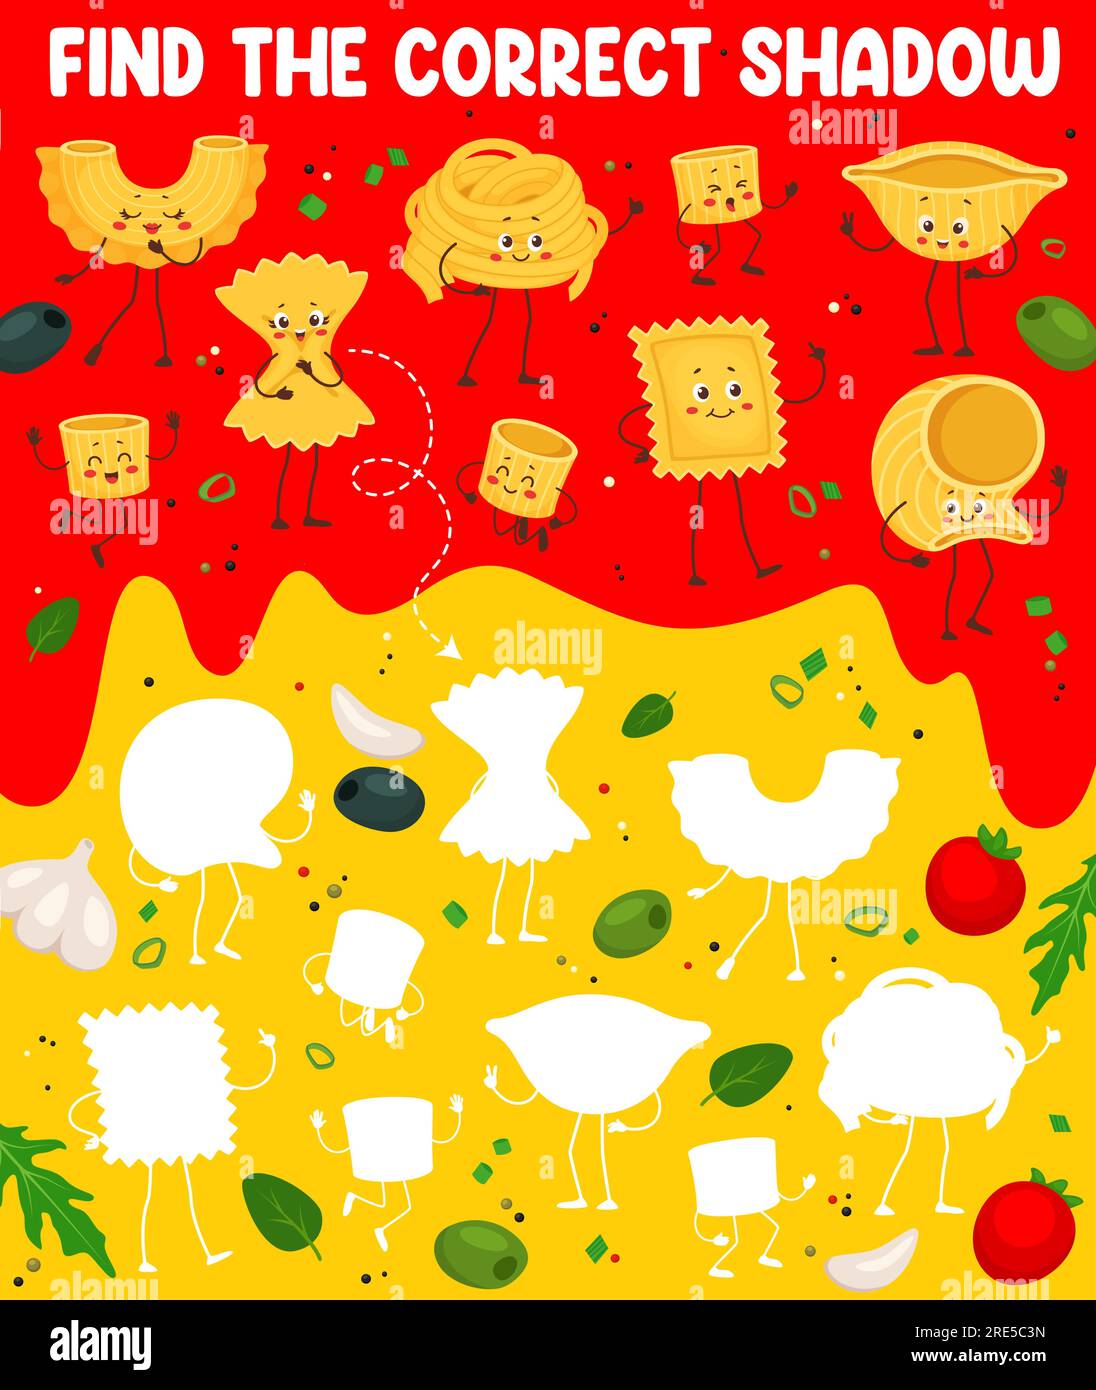 Trova l'ombra corretta del gioco a quiz vettoriale dei personaggi della pasta italiana dei cartoni animati. Foglio di lavoro del puzzle per bambini con simpatici maccheroni, graziose farfalle, fettuccine, conchiglie e ravioli Illustrazione Vettoriale